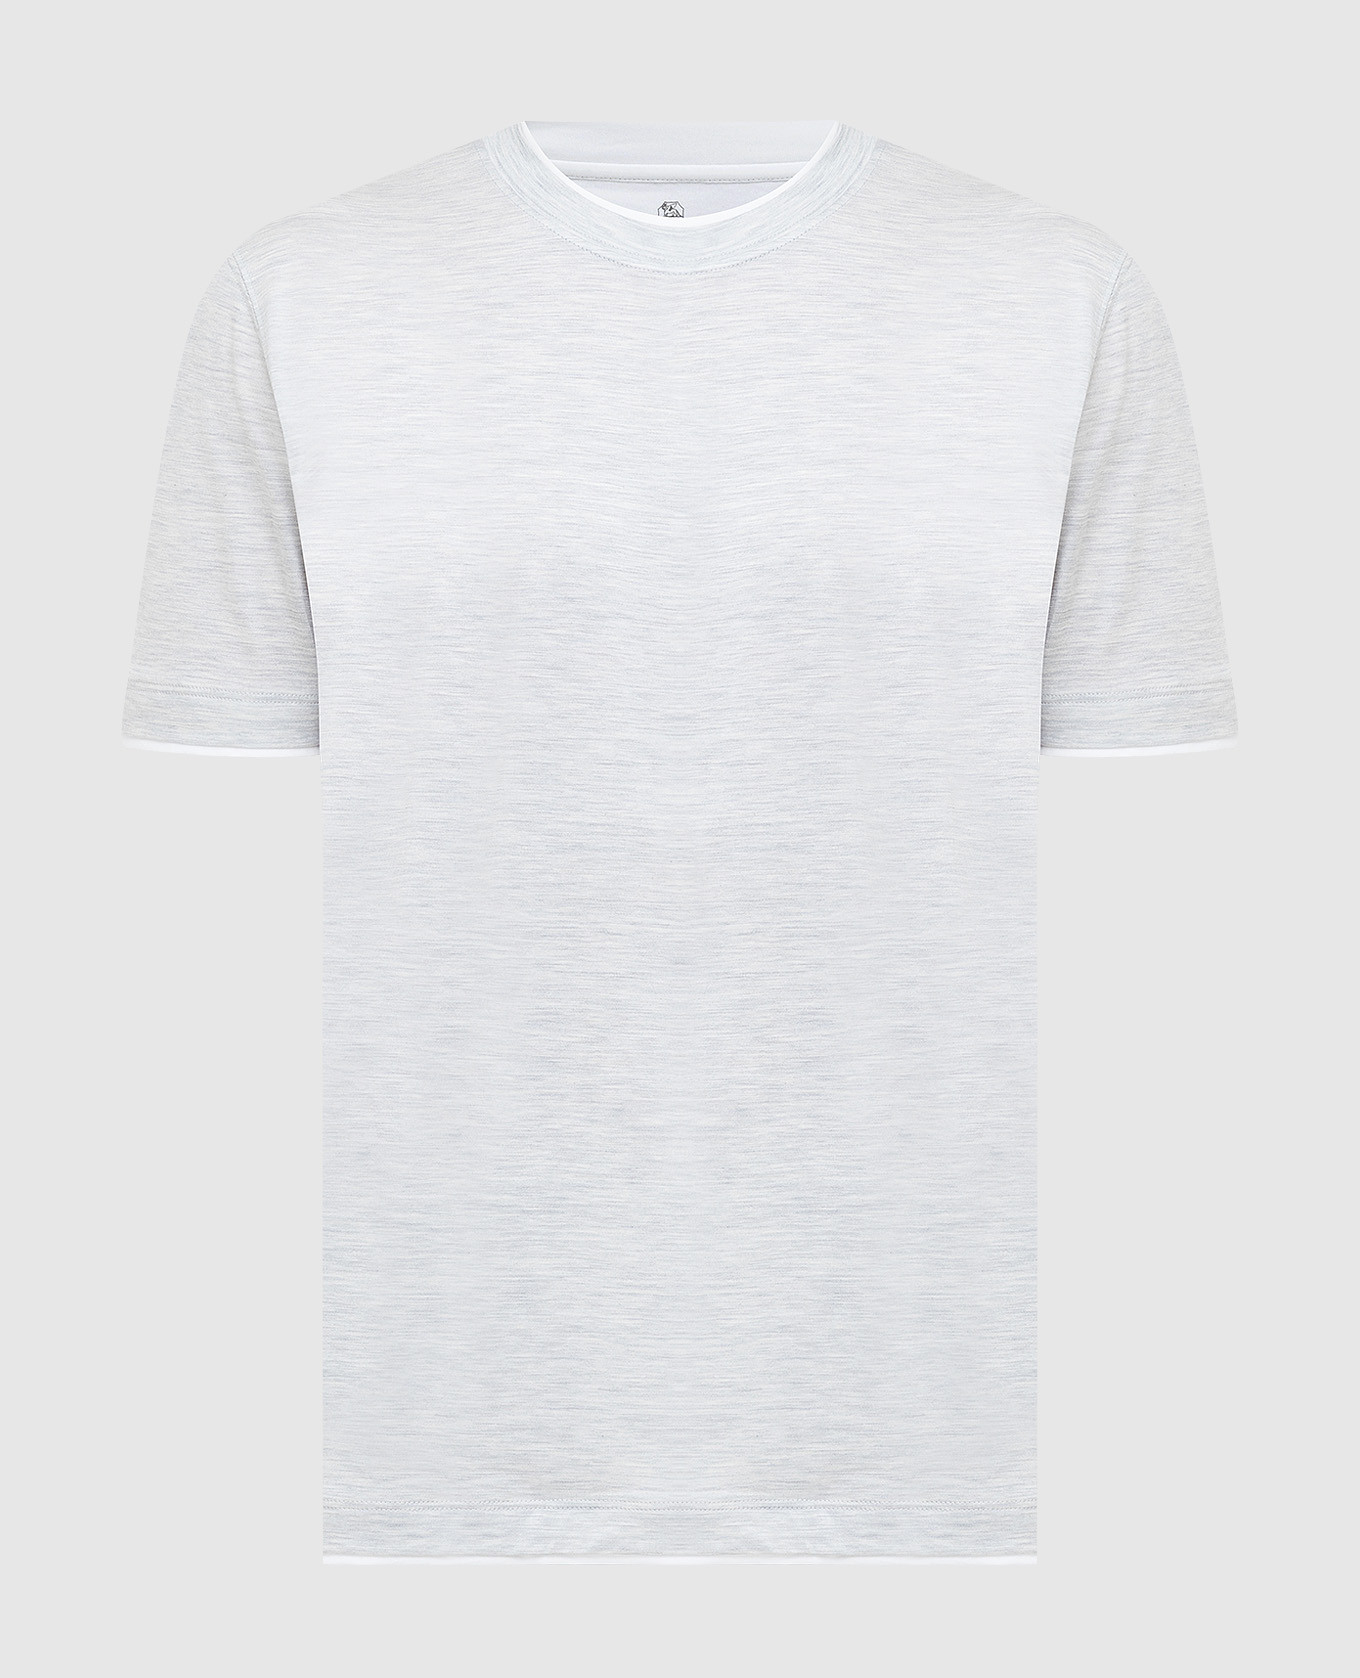 Light gray T-shirt